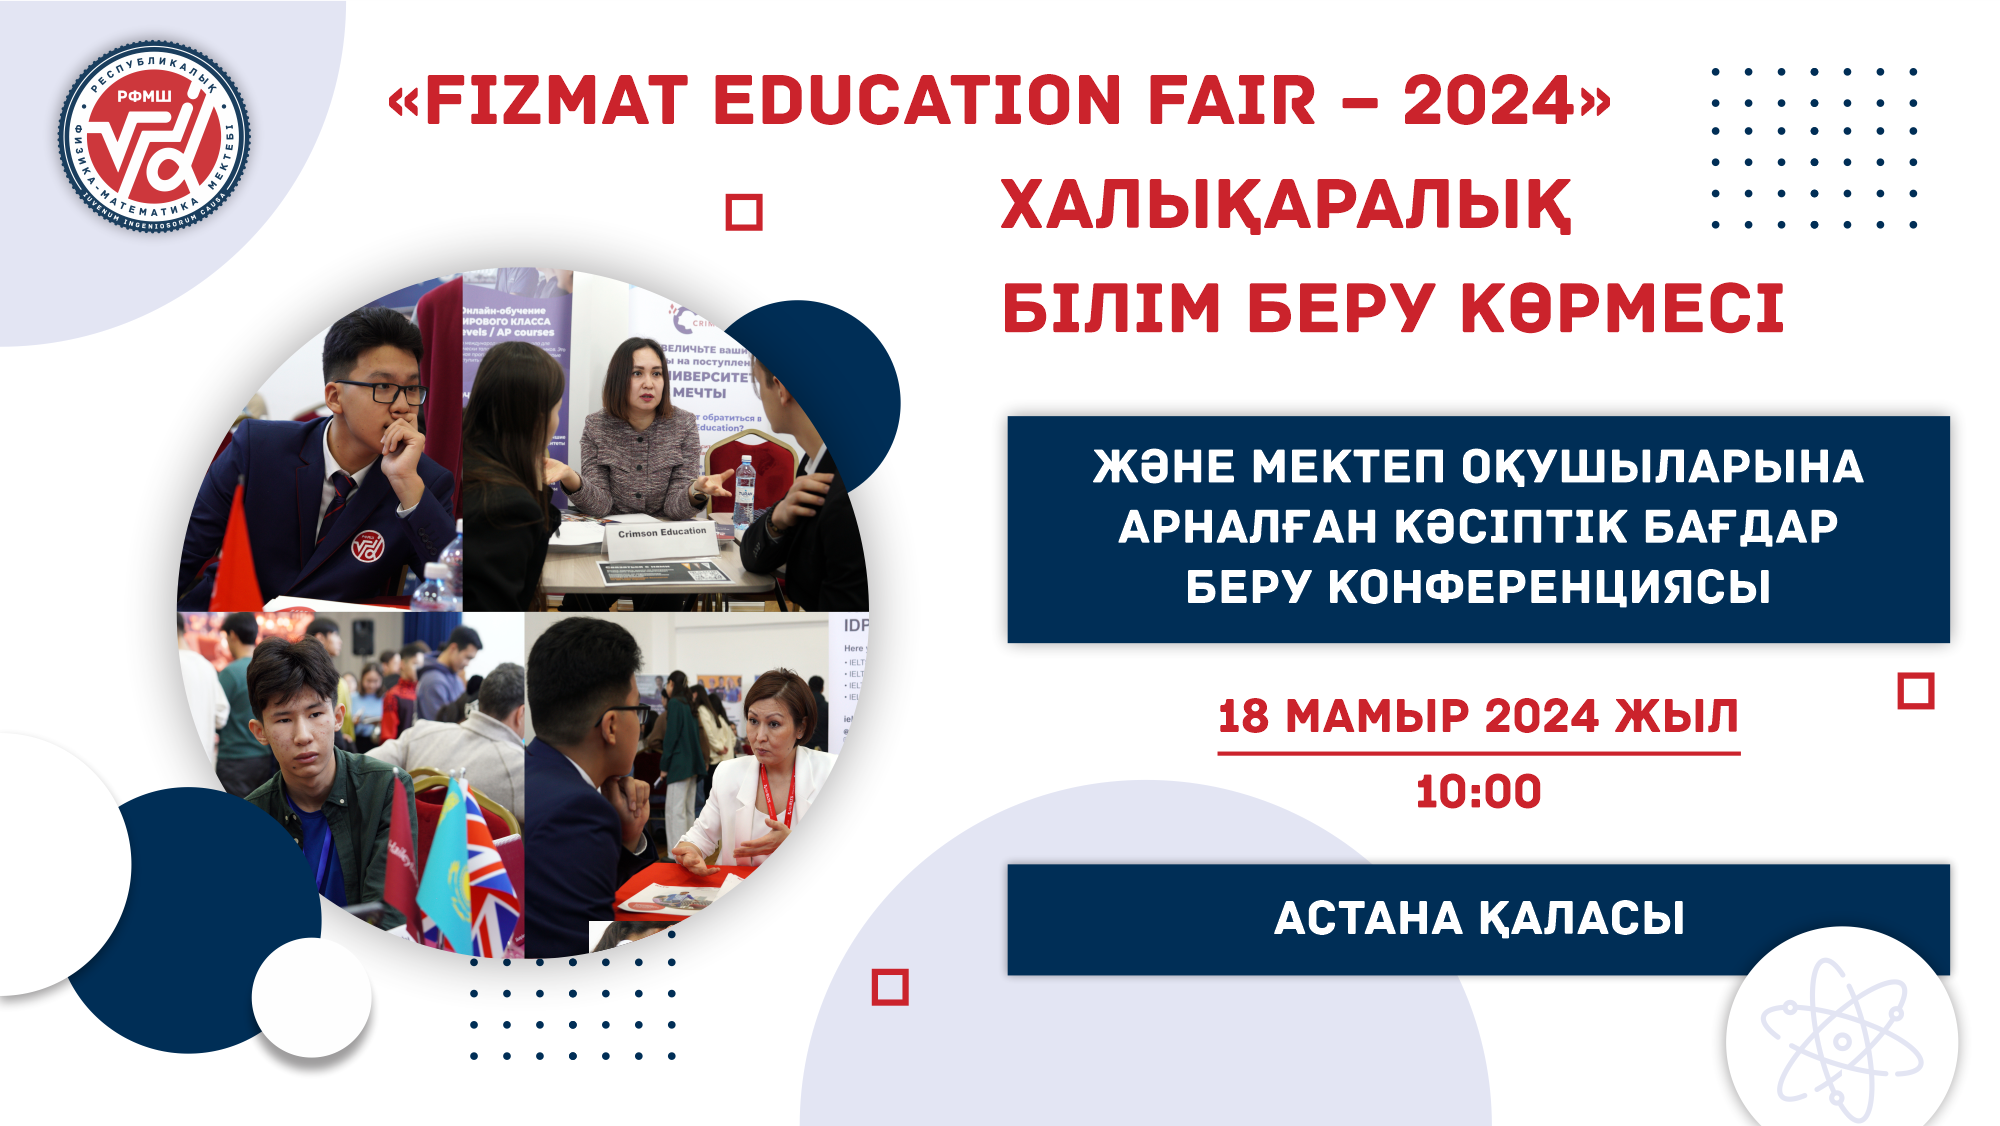 «FIZMAT Education Fair – 2024» халықаралық білім беру көрмесі және мектеп оқушыларына арналған кәсіптік бағдар беру конференциясы